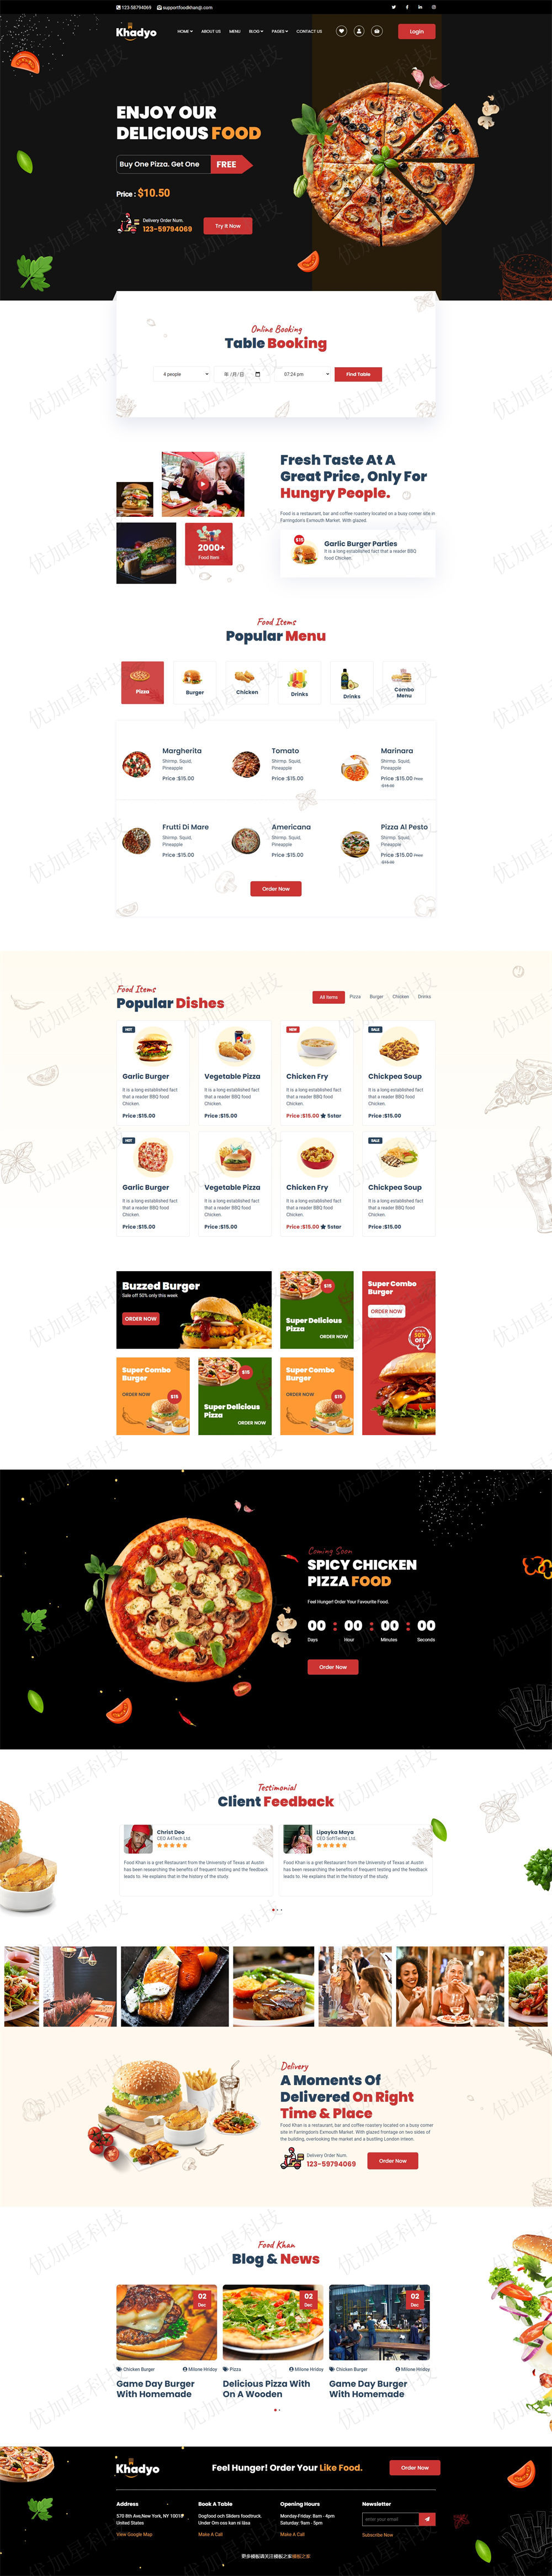 披萨快餐厅企业网站模板源码下载_优加星网络科技